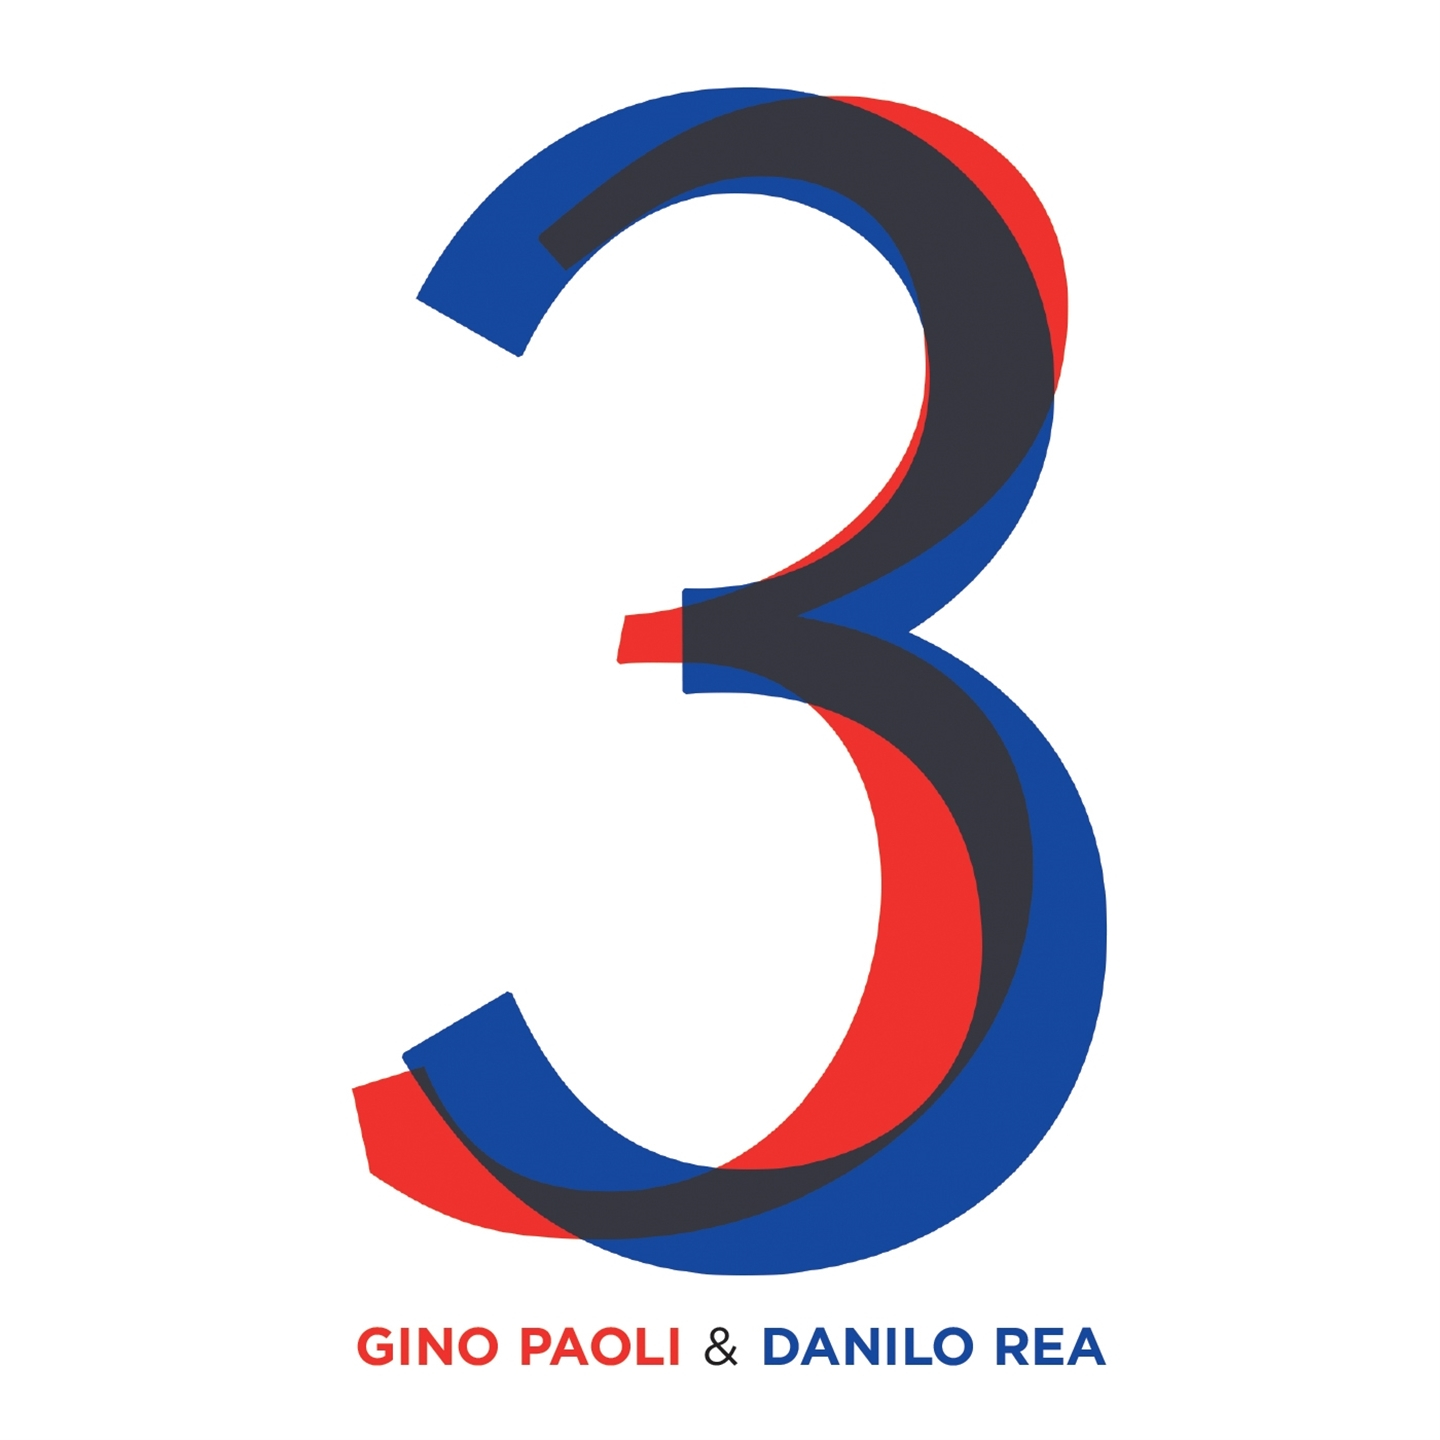 Gino Paoli, Danilo Rea - 3 - Picture 1 of 1